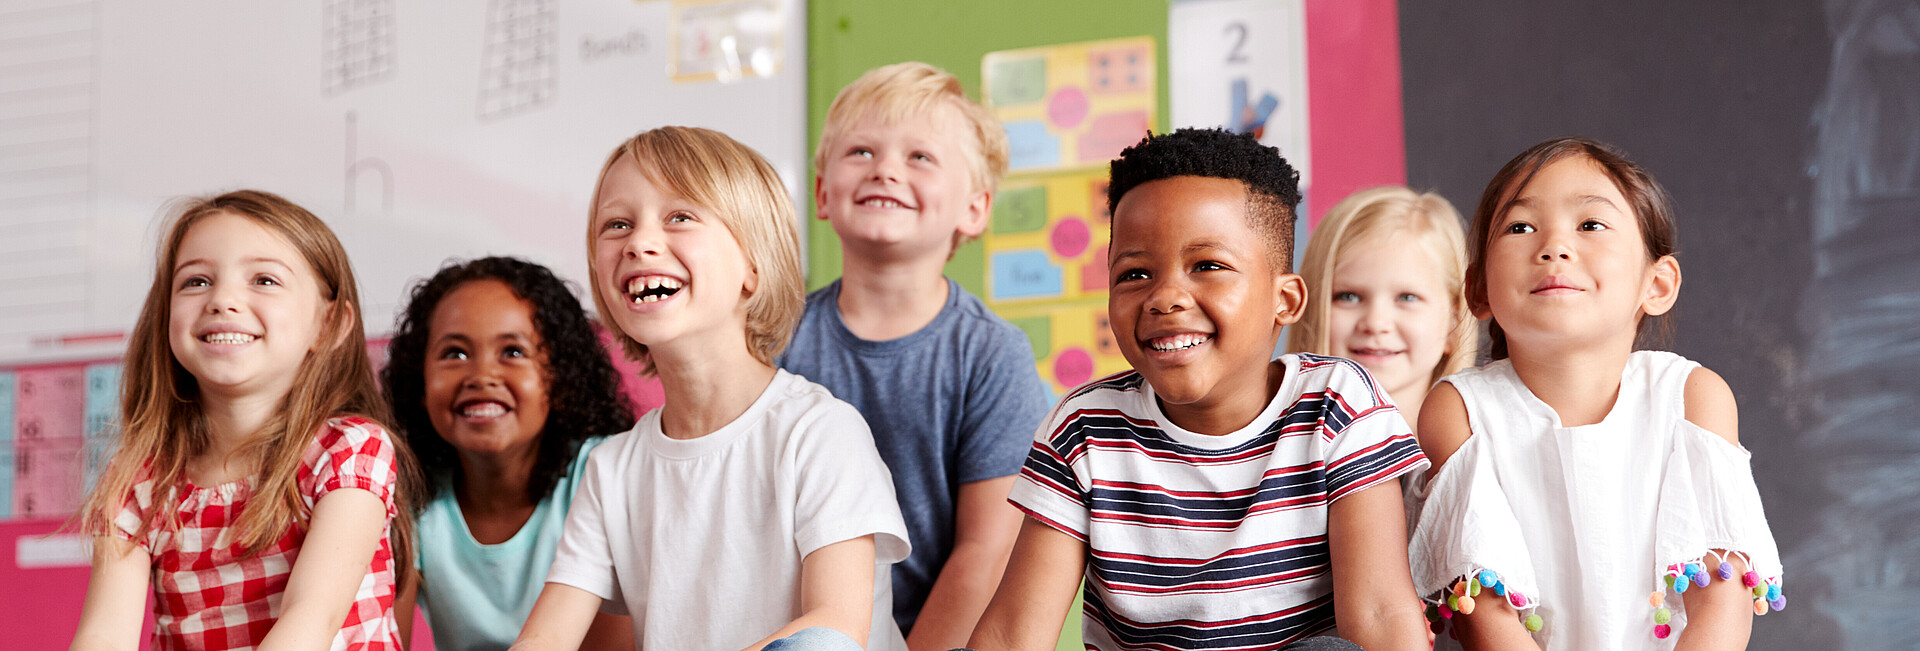 Lachende Kinder in einem Klassenzimmer